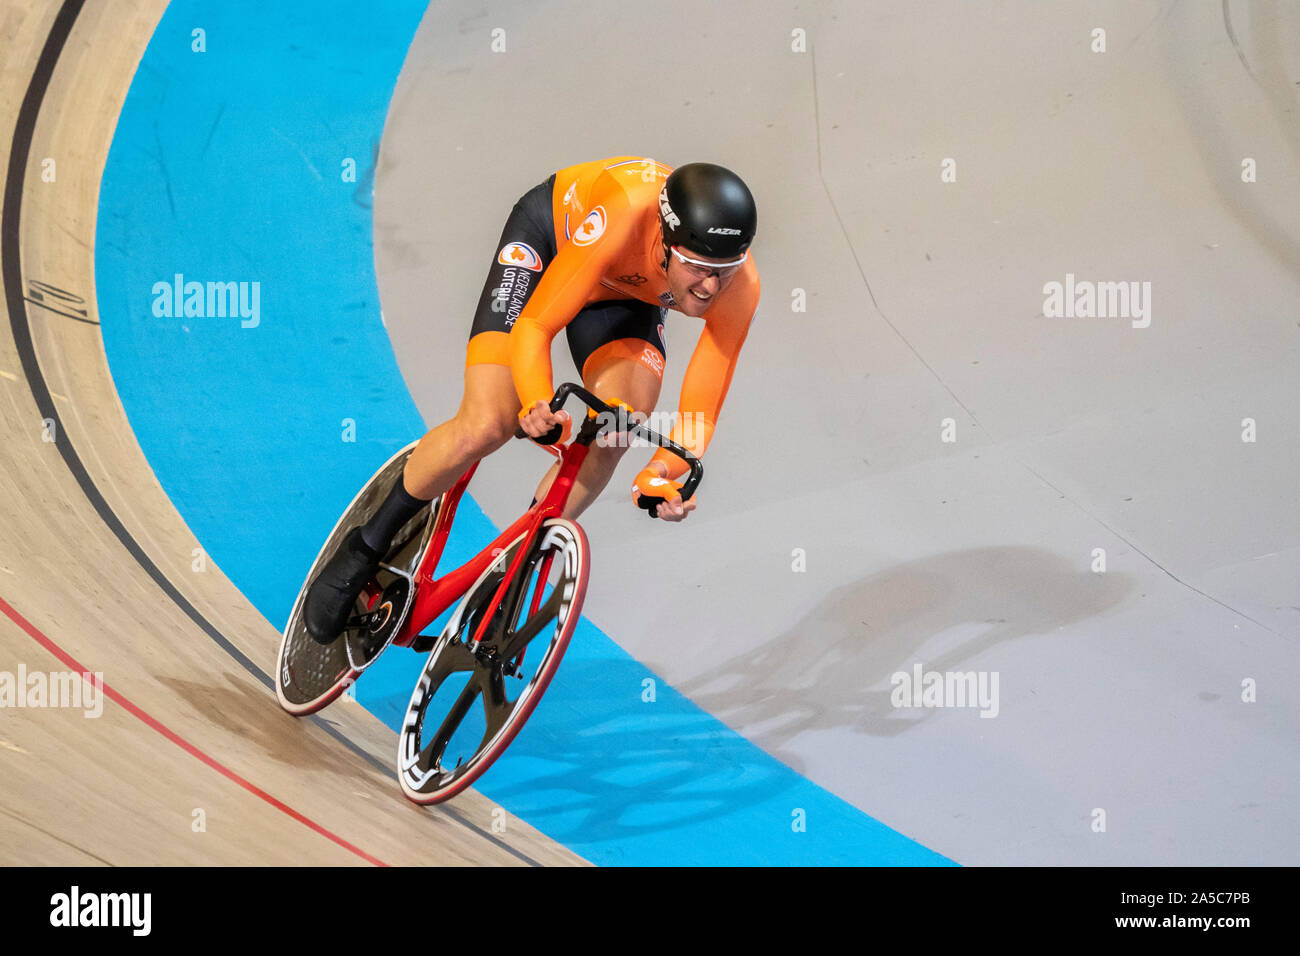 Jan-Willem van Schip NED beim UEC Titel Radfahren Europäische Meisterschaft am Oktober, 18 2019 in Apeldoorn, Niederlande. (Foto von SCS/Sander Chamid) Stockfoto